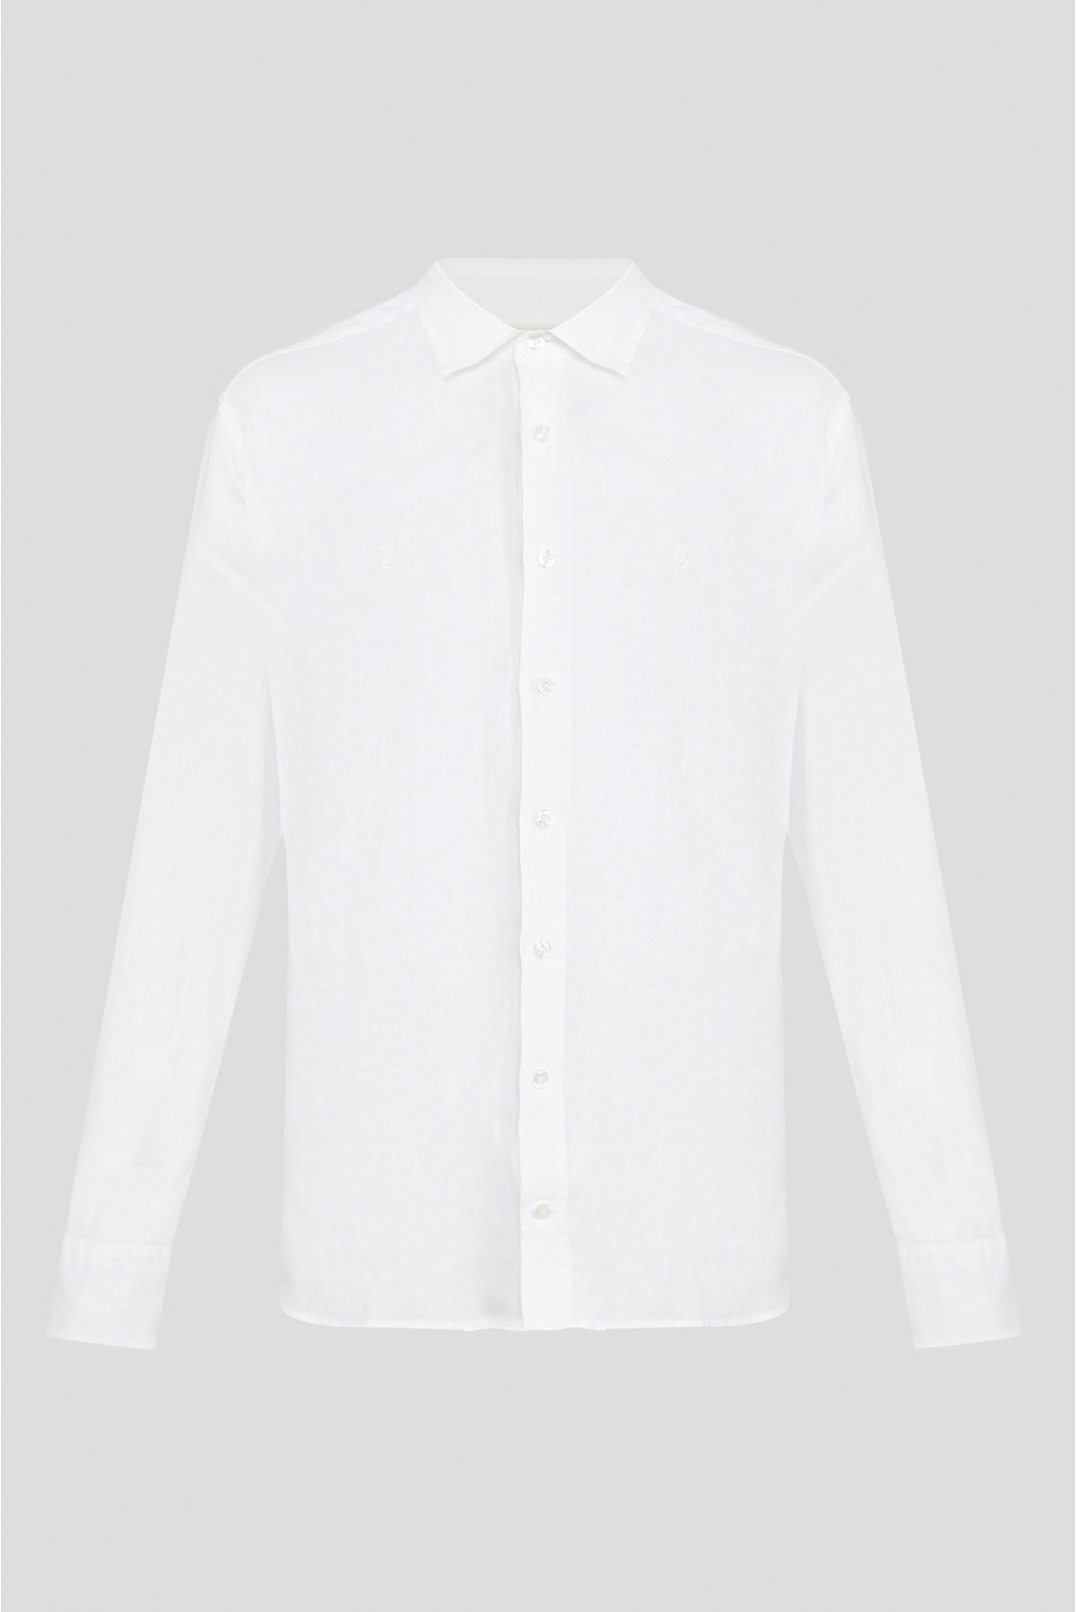 Чоловіча біла лляна сорочка - 1